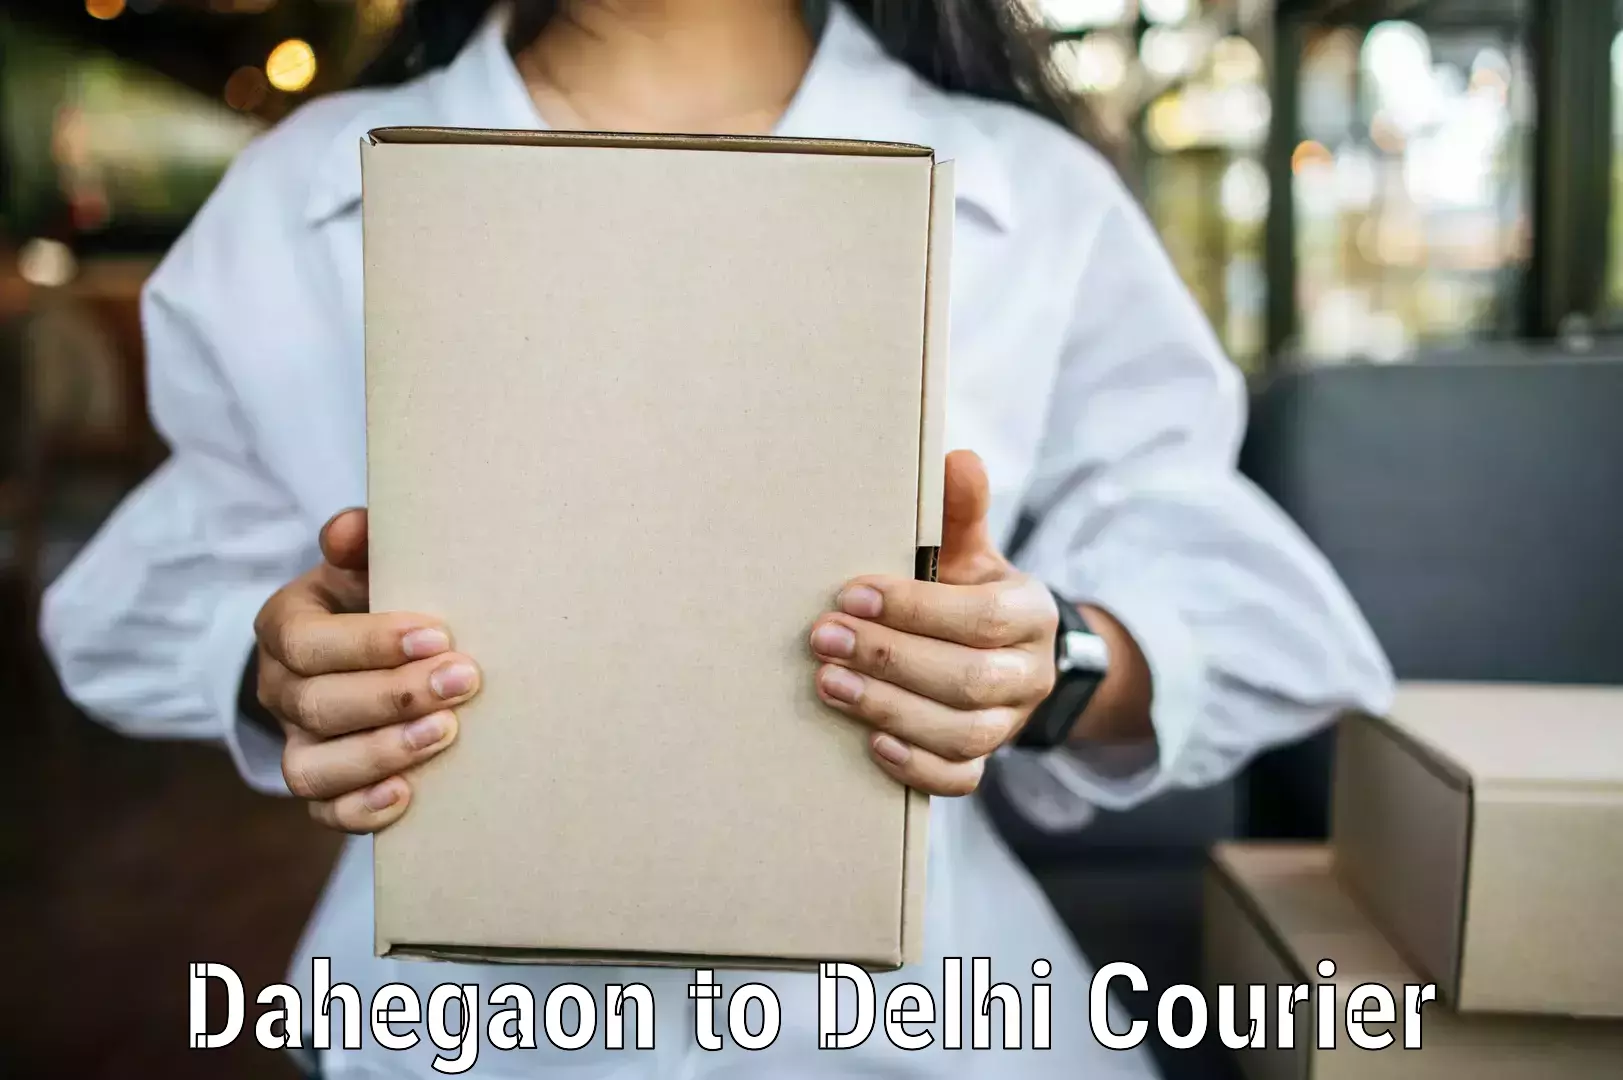 Premium courier services Dahegaon to Kalkaji